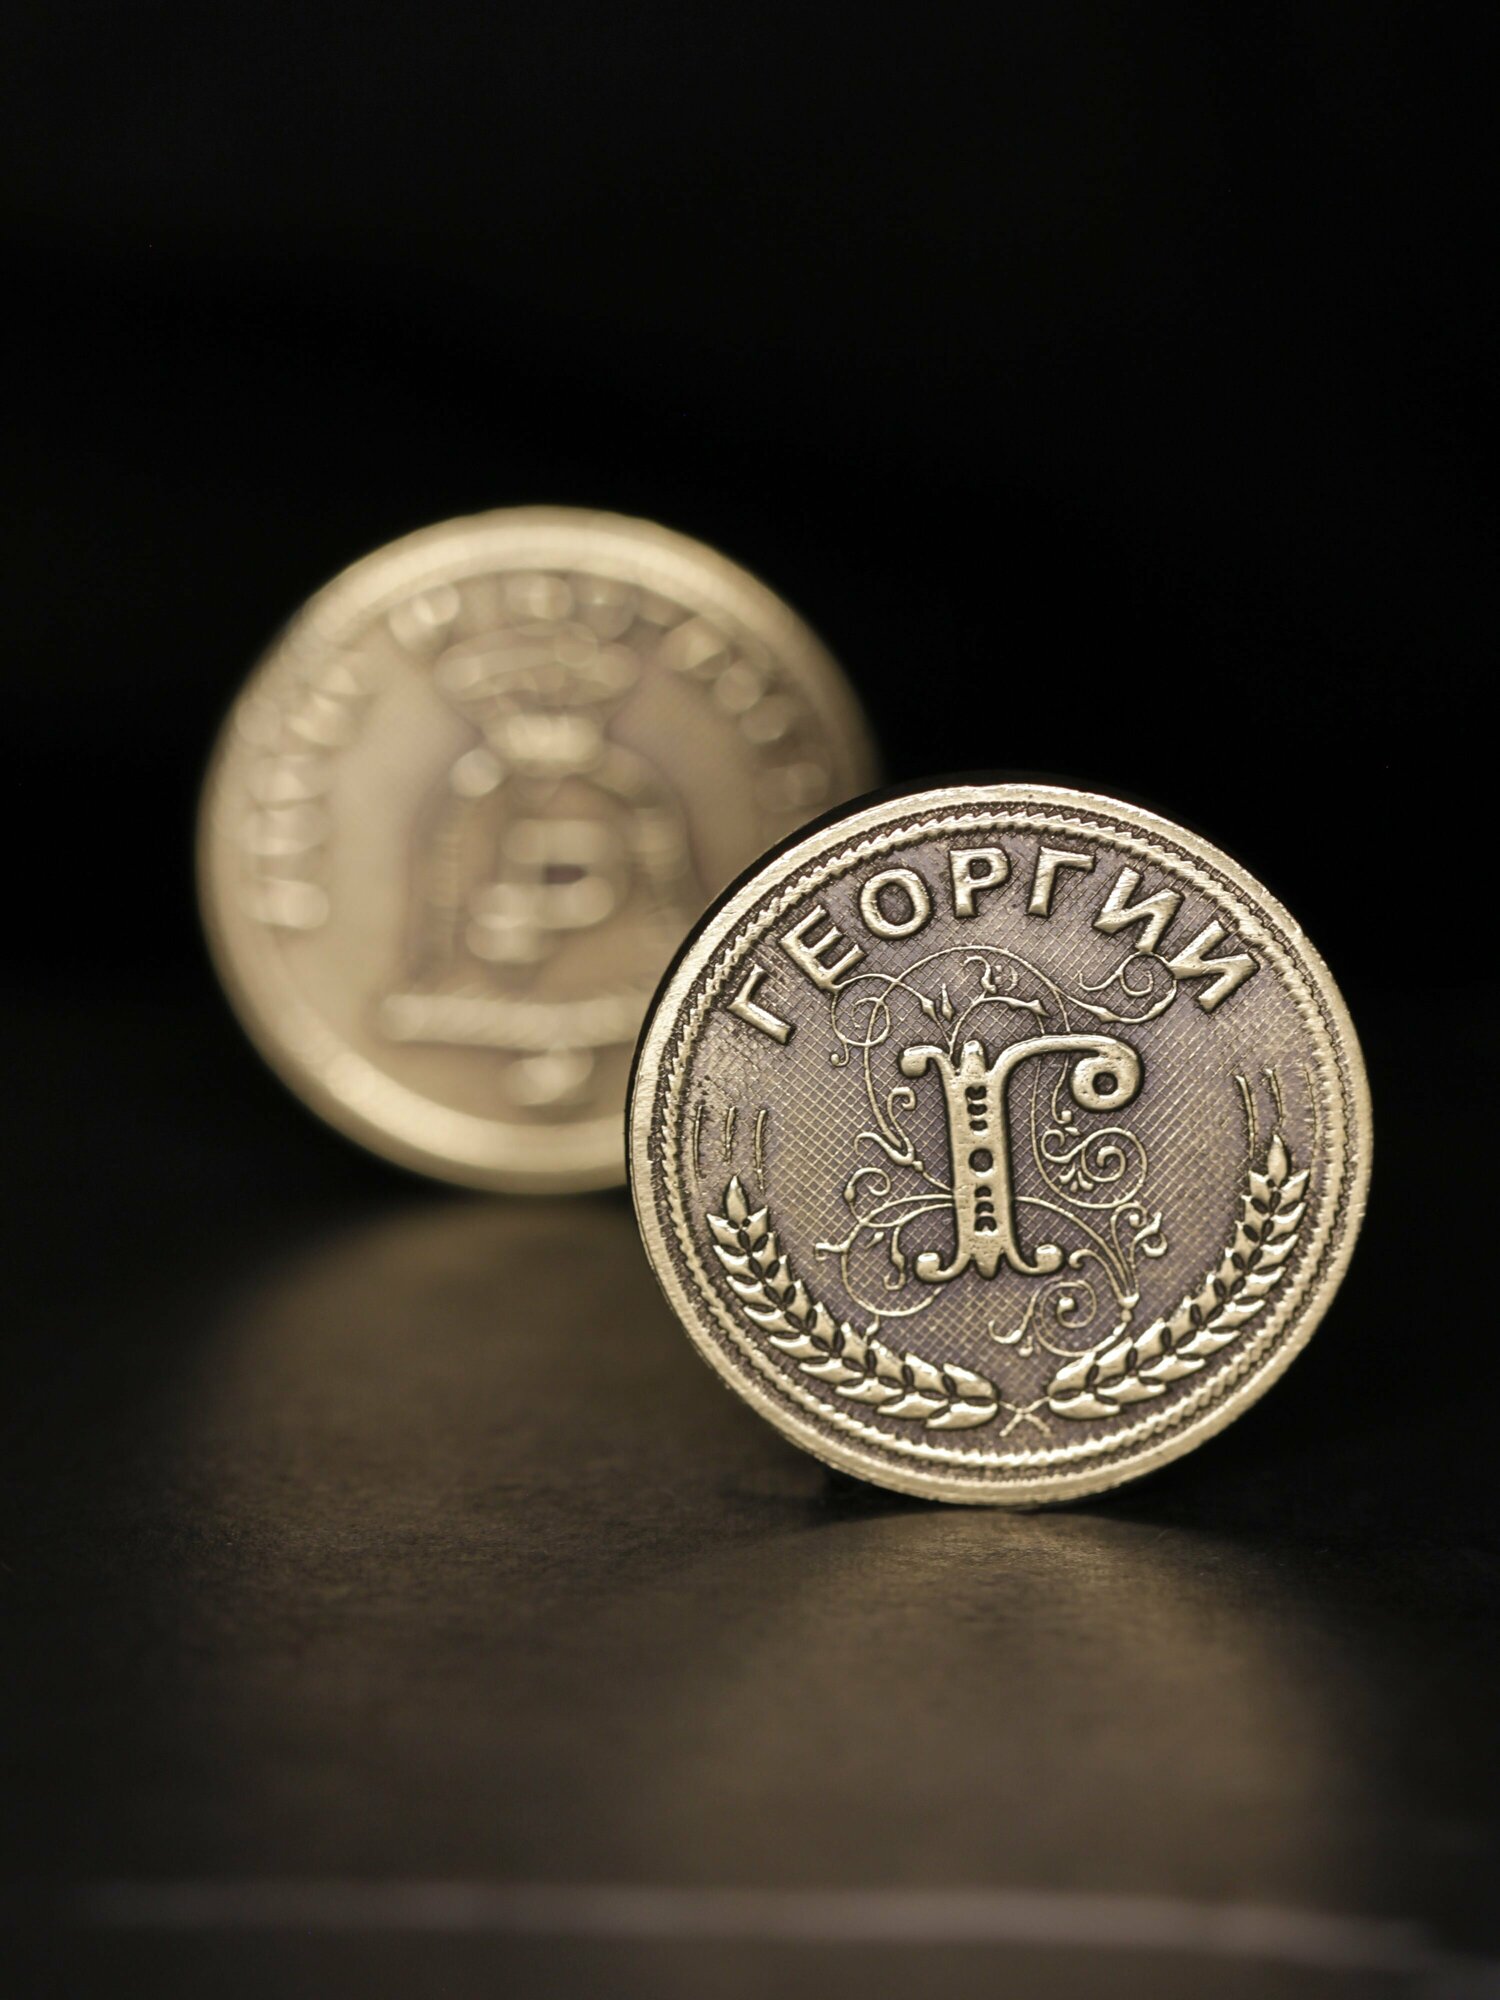 Именная оригинальна сувенирная монетка в подарок на богатство и удачу мужчине или мальчику - Георгий